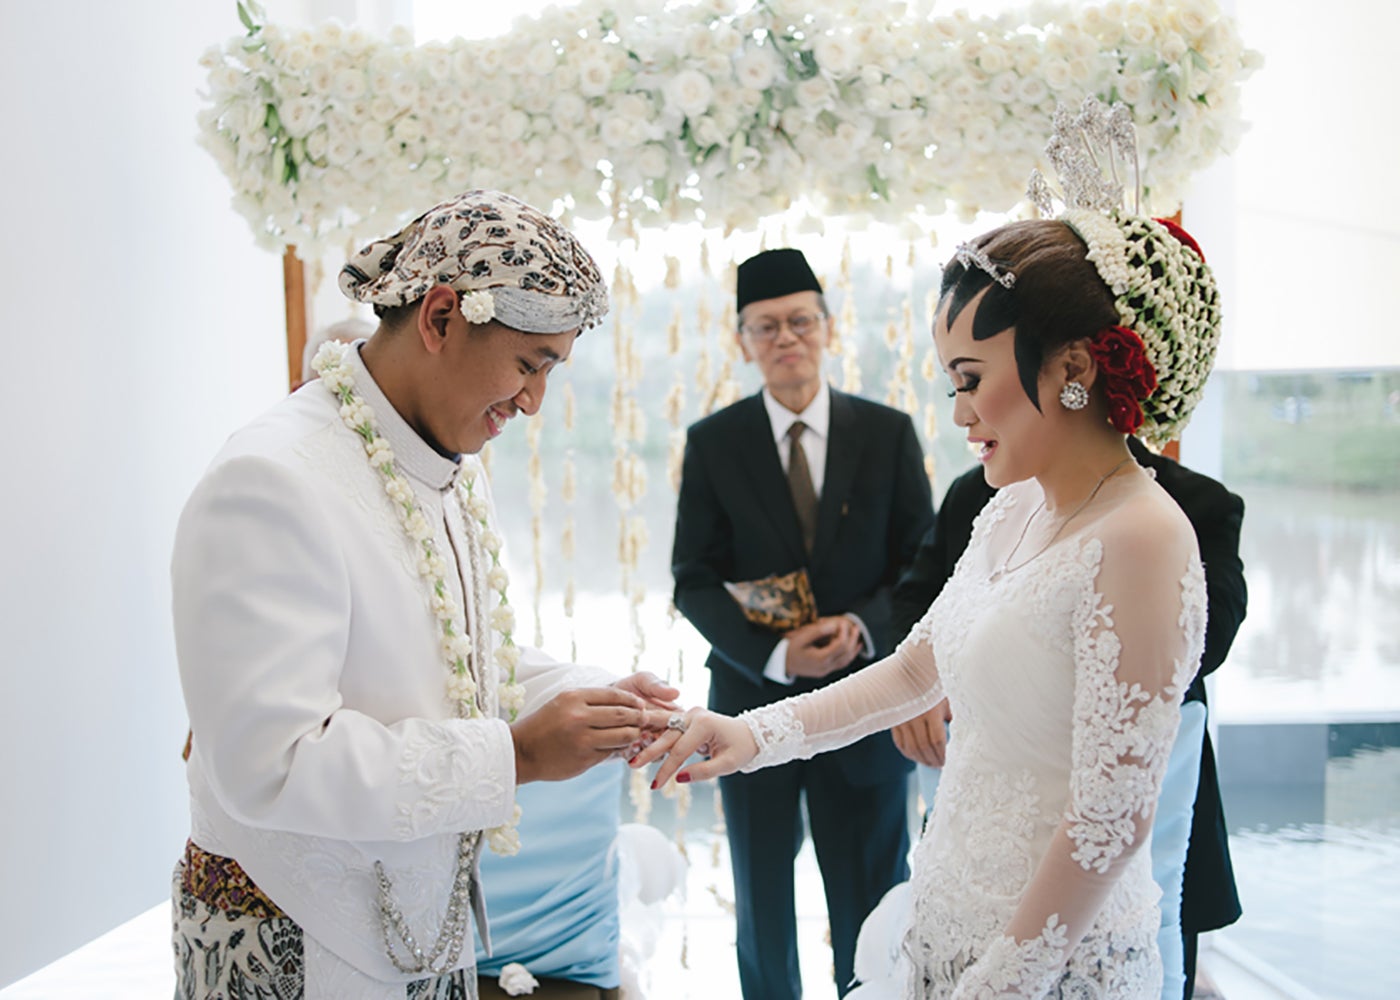 Indonesian weddings